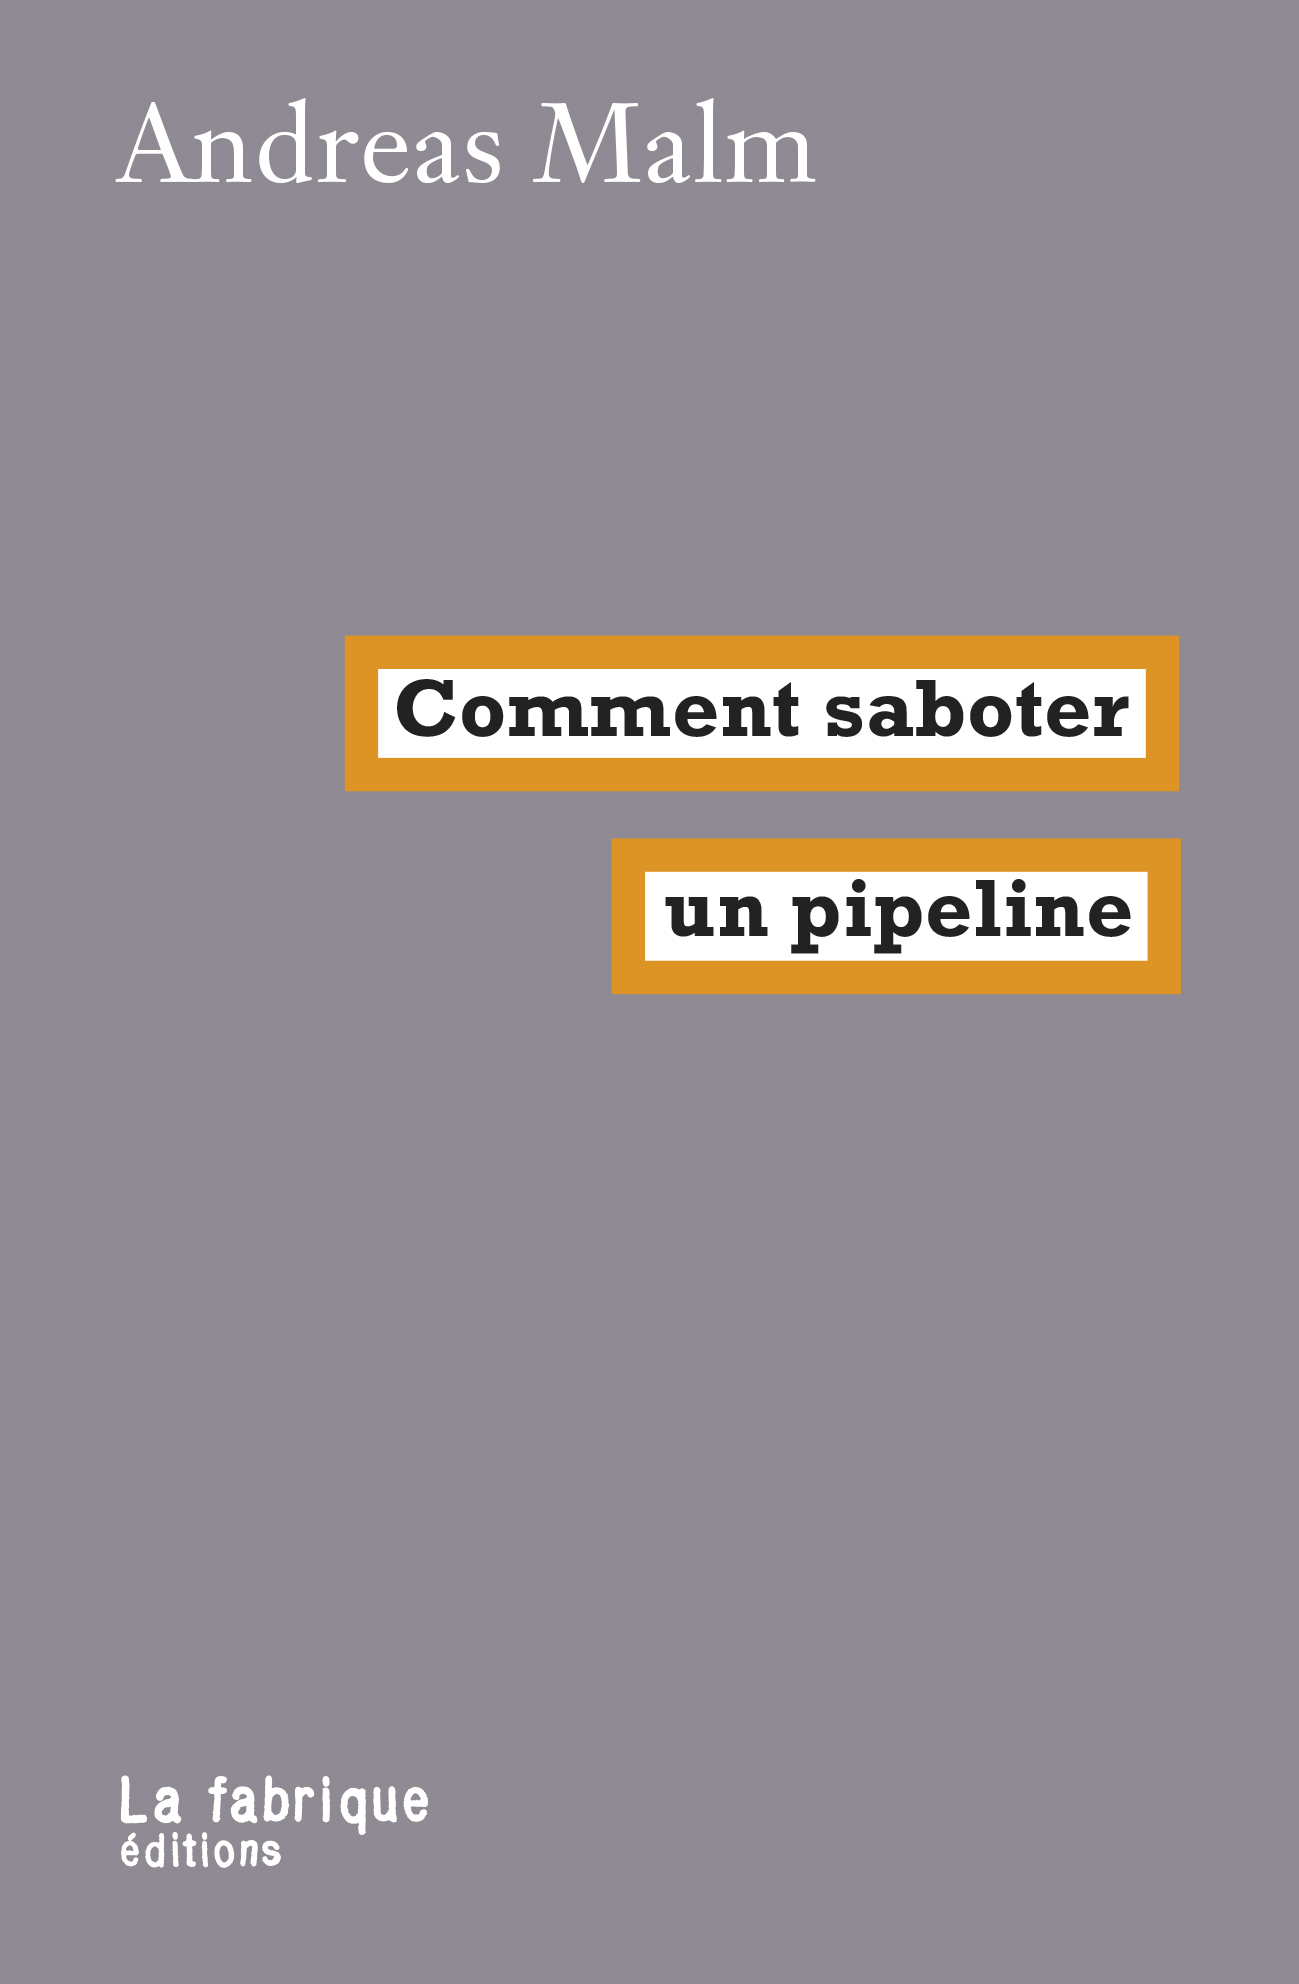 Andreas Malm: Comment saboter un pipeline (Paperback, Français language, La Fabrique)